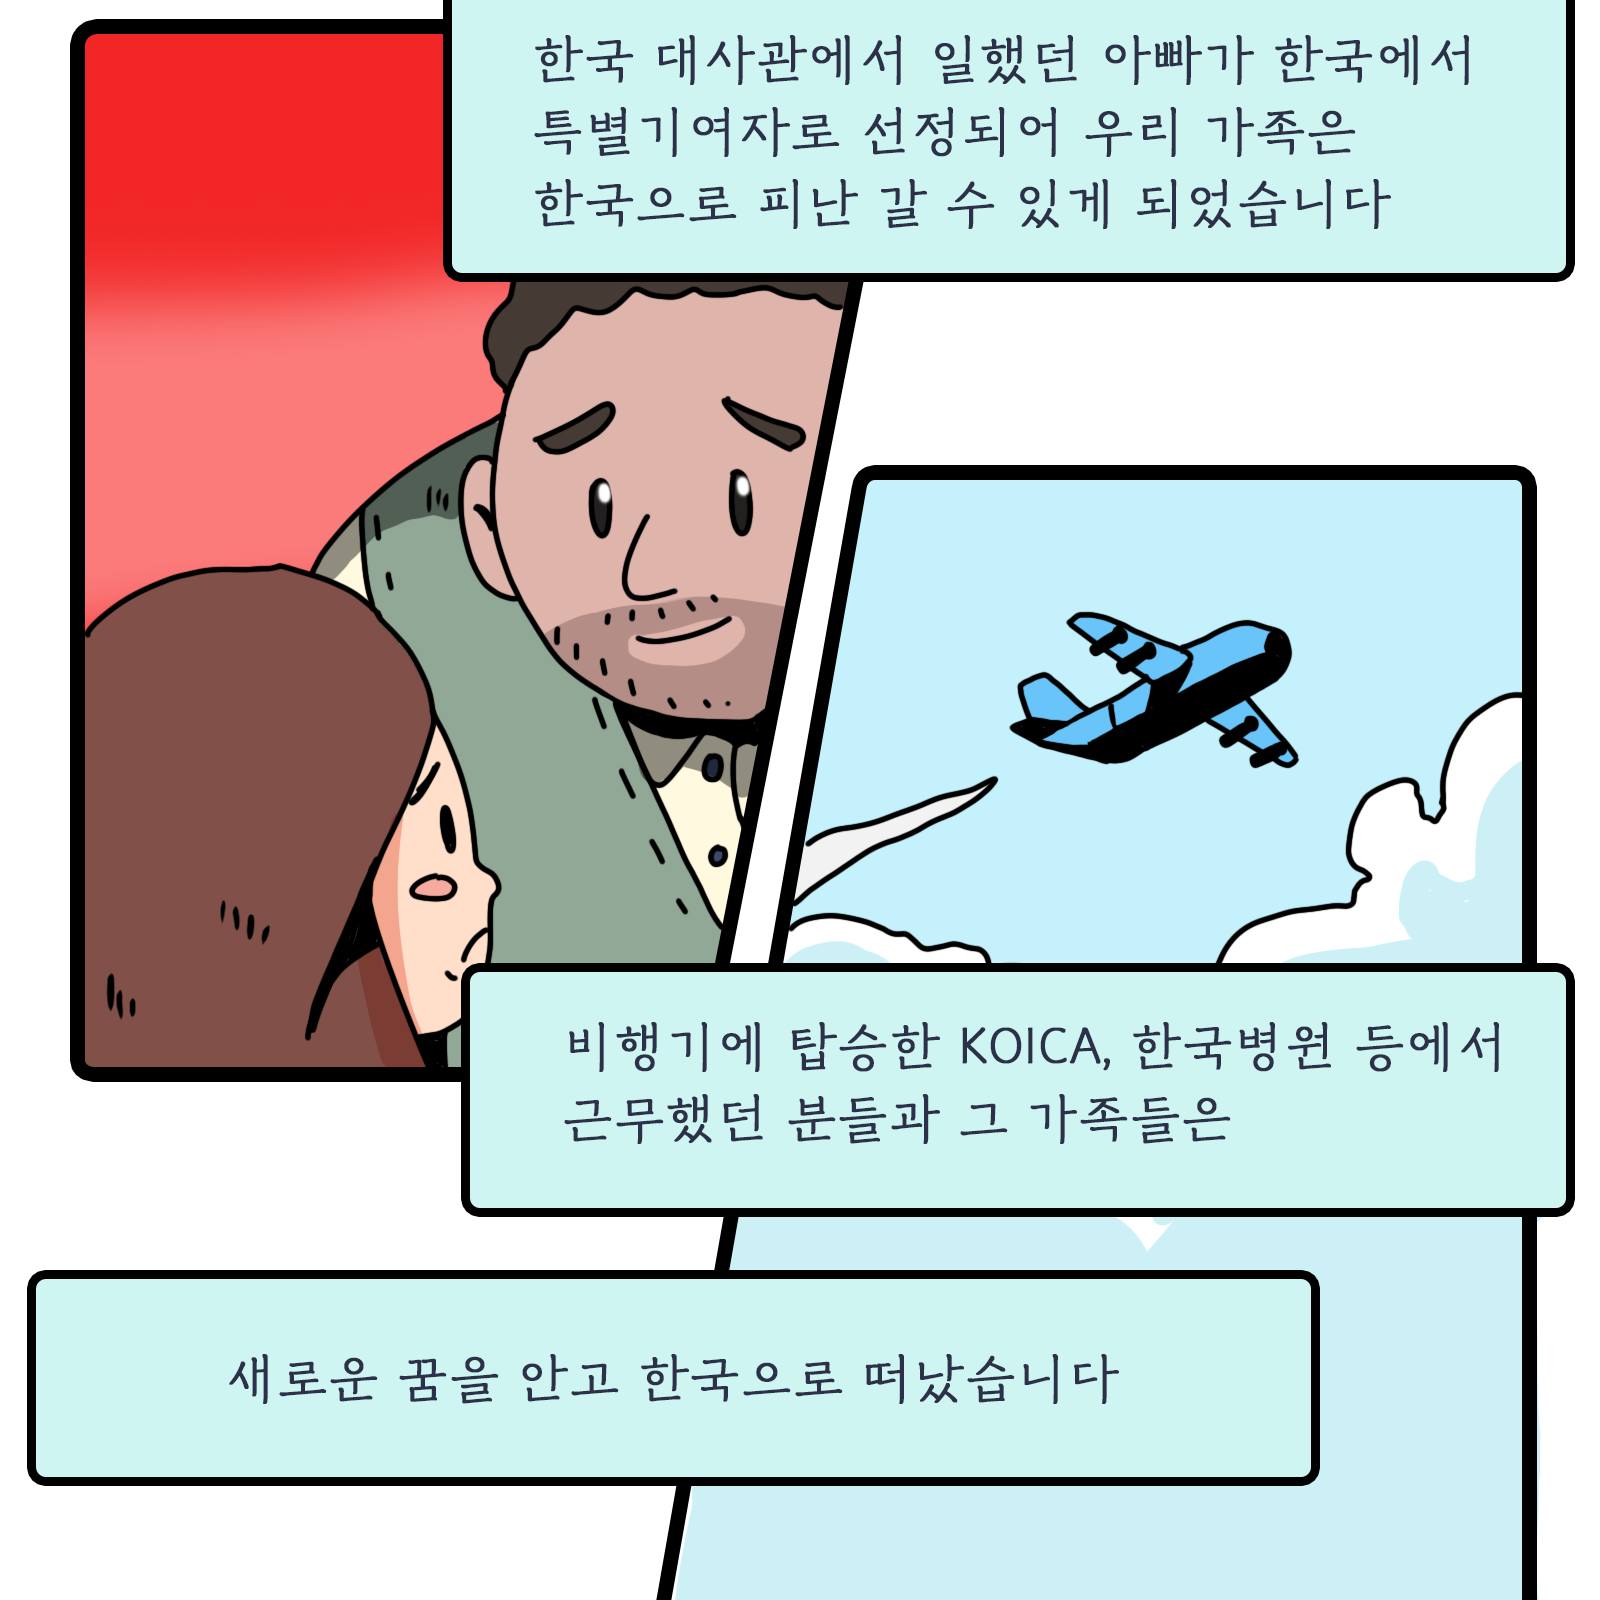 한국 대사관에서 일했던 아빠가 한국에서 특별기여자로 선정되어 우리 가족은 한국으로 피난 갈 수 있게 되었습니다. 비행기에 탑승한 KOICA, 한국병원 등에서 근무했던 분들과 그 가족들은 새로운 꿈을 안고 한국으로 떠났습니다. 